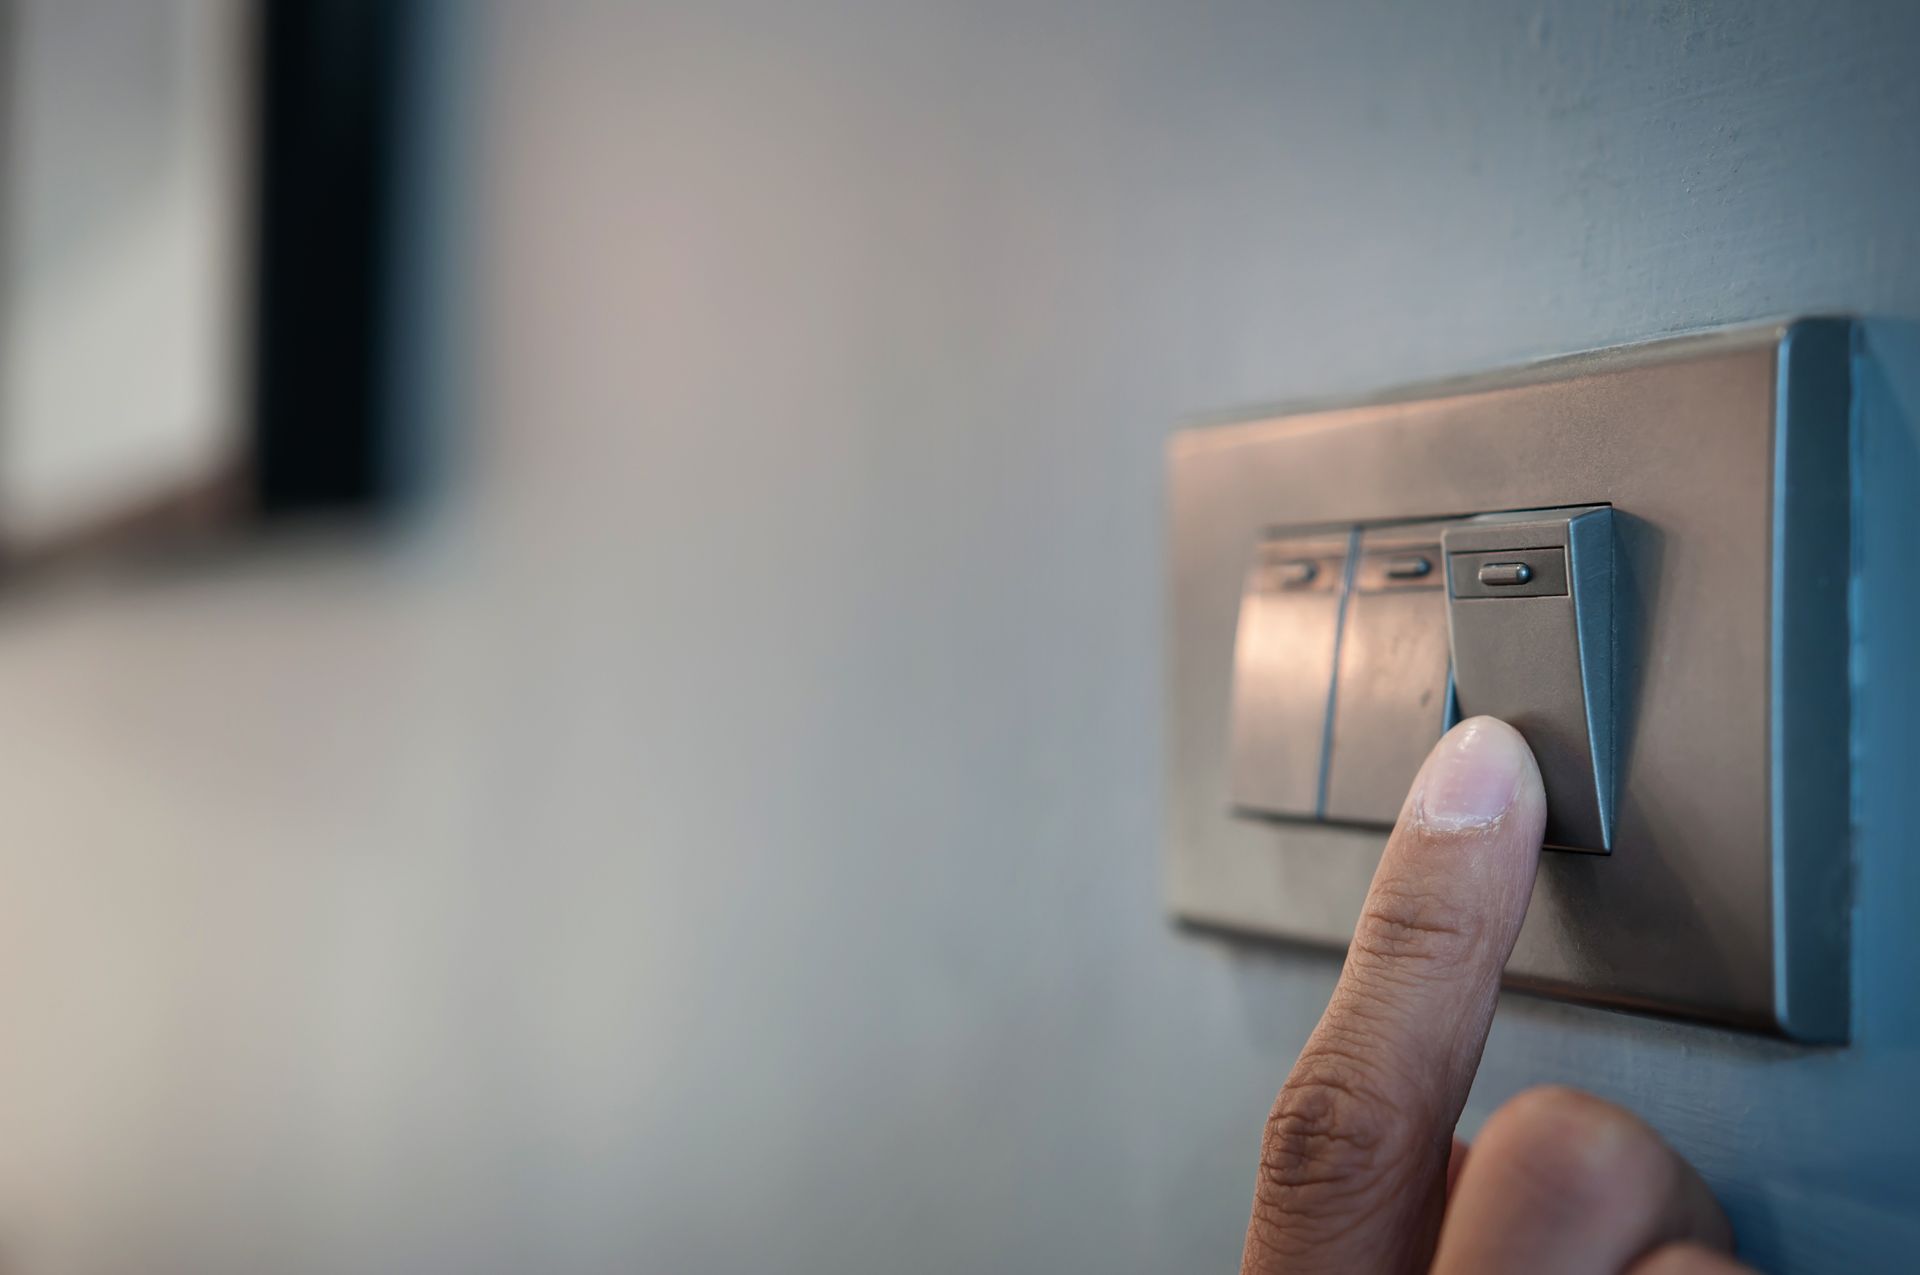 Una persona está presionando un interruptor de luz en una pared.